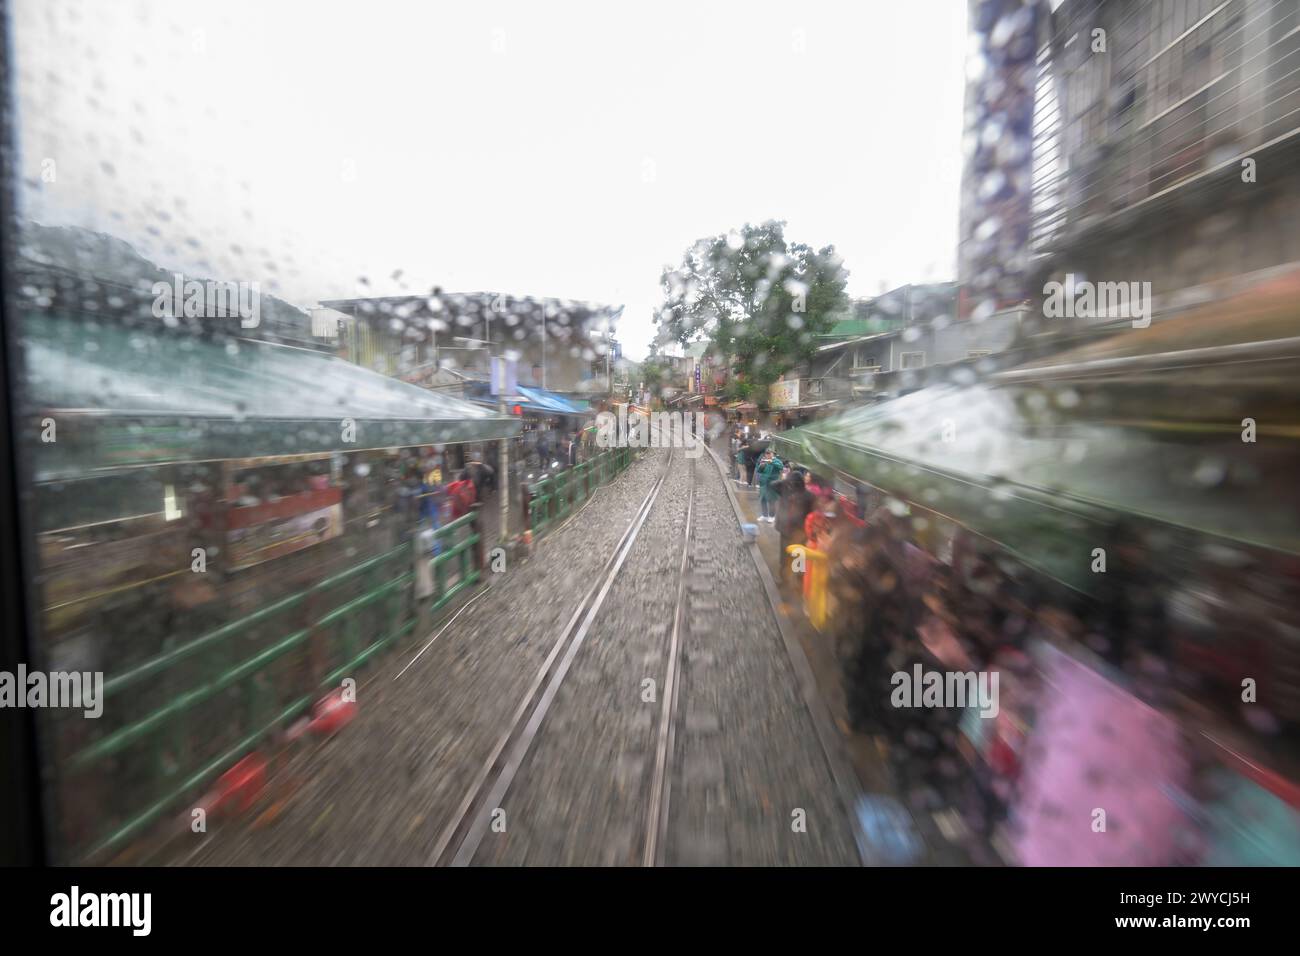 Eine lebendige und abstrakte Darstellung der Reise eines Zuges, die durch Bewegungsunschärfe an einem regnerischen Tag erfasst wird und Geschwindigkeit und Bewegung vermittelt Stockfoto